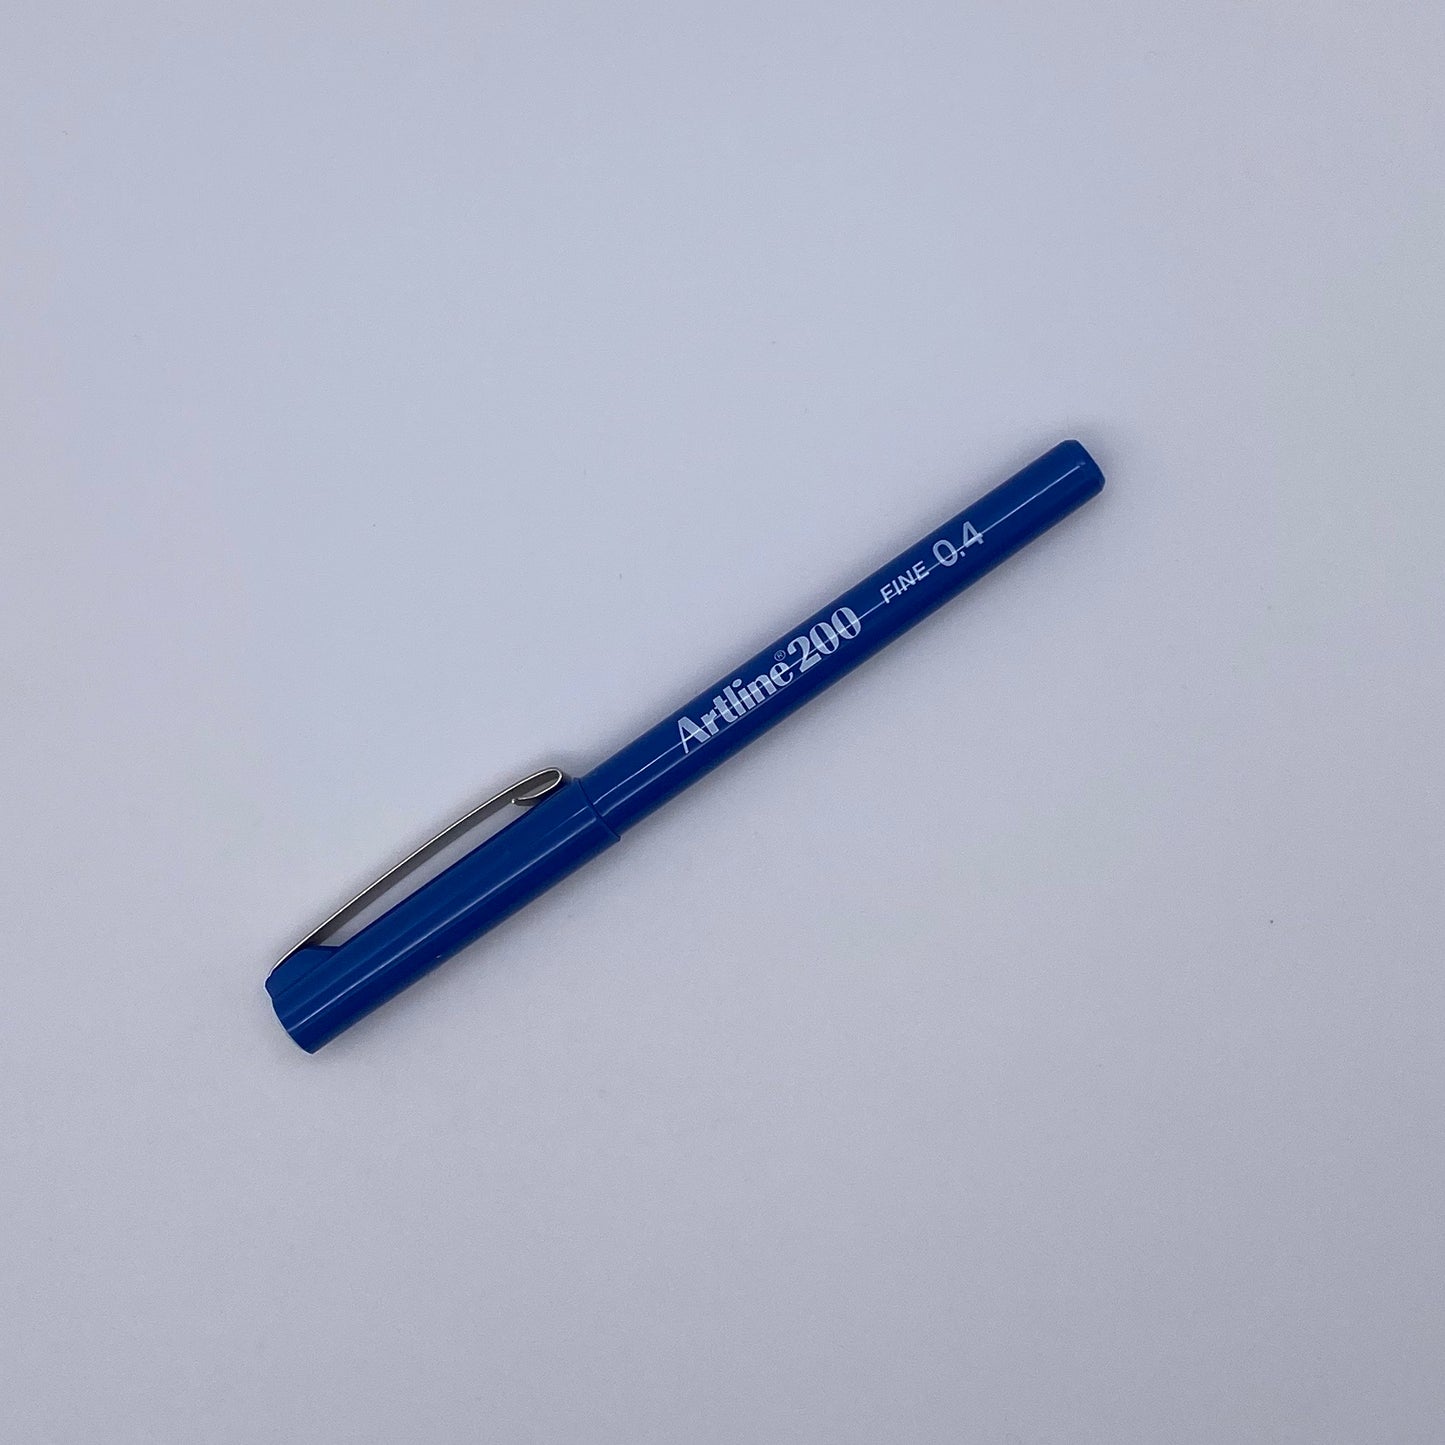 Artline 200 Pen